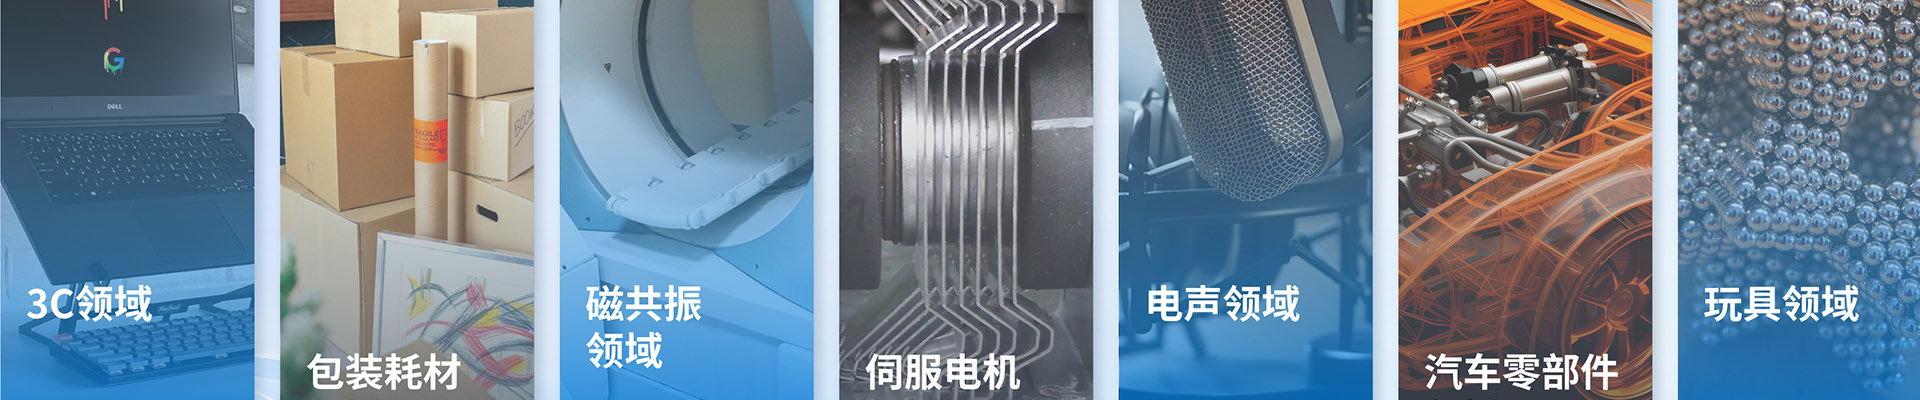 瓦形钕铁硼磁铁-钕铁硼系列-宁波允亿磁业科技有限公司